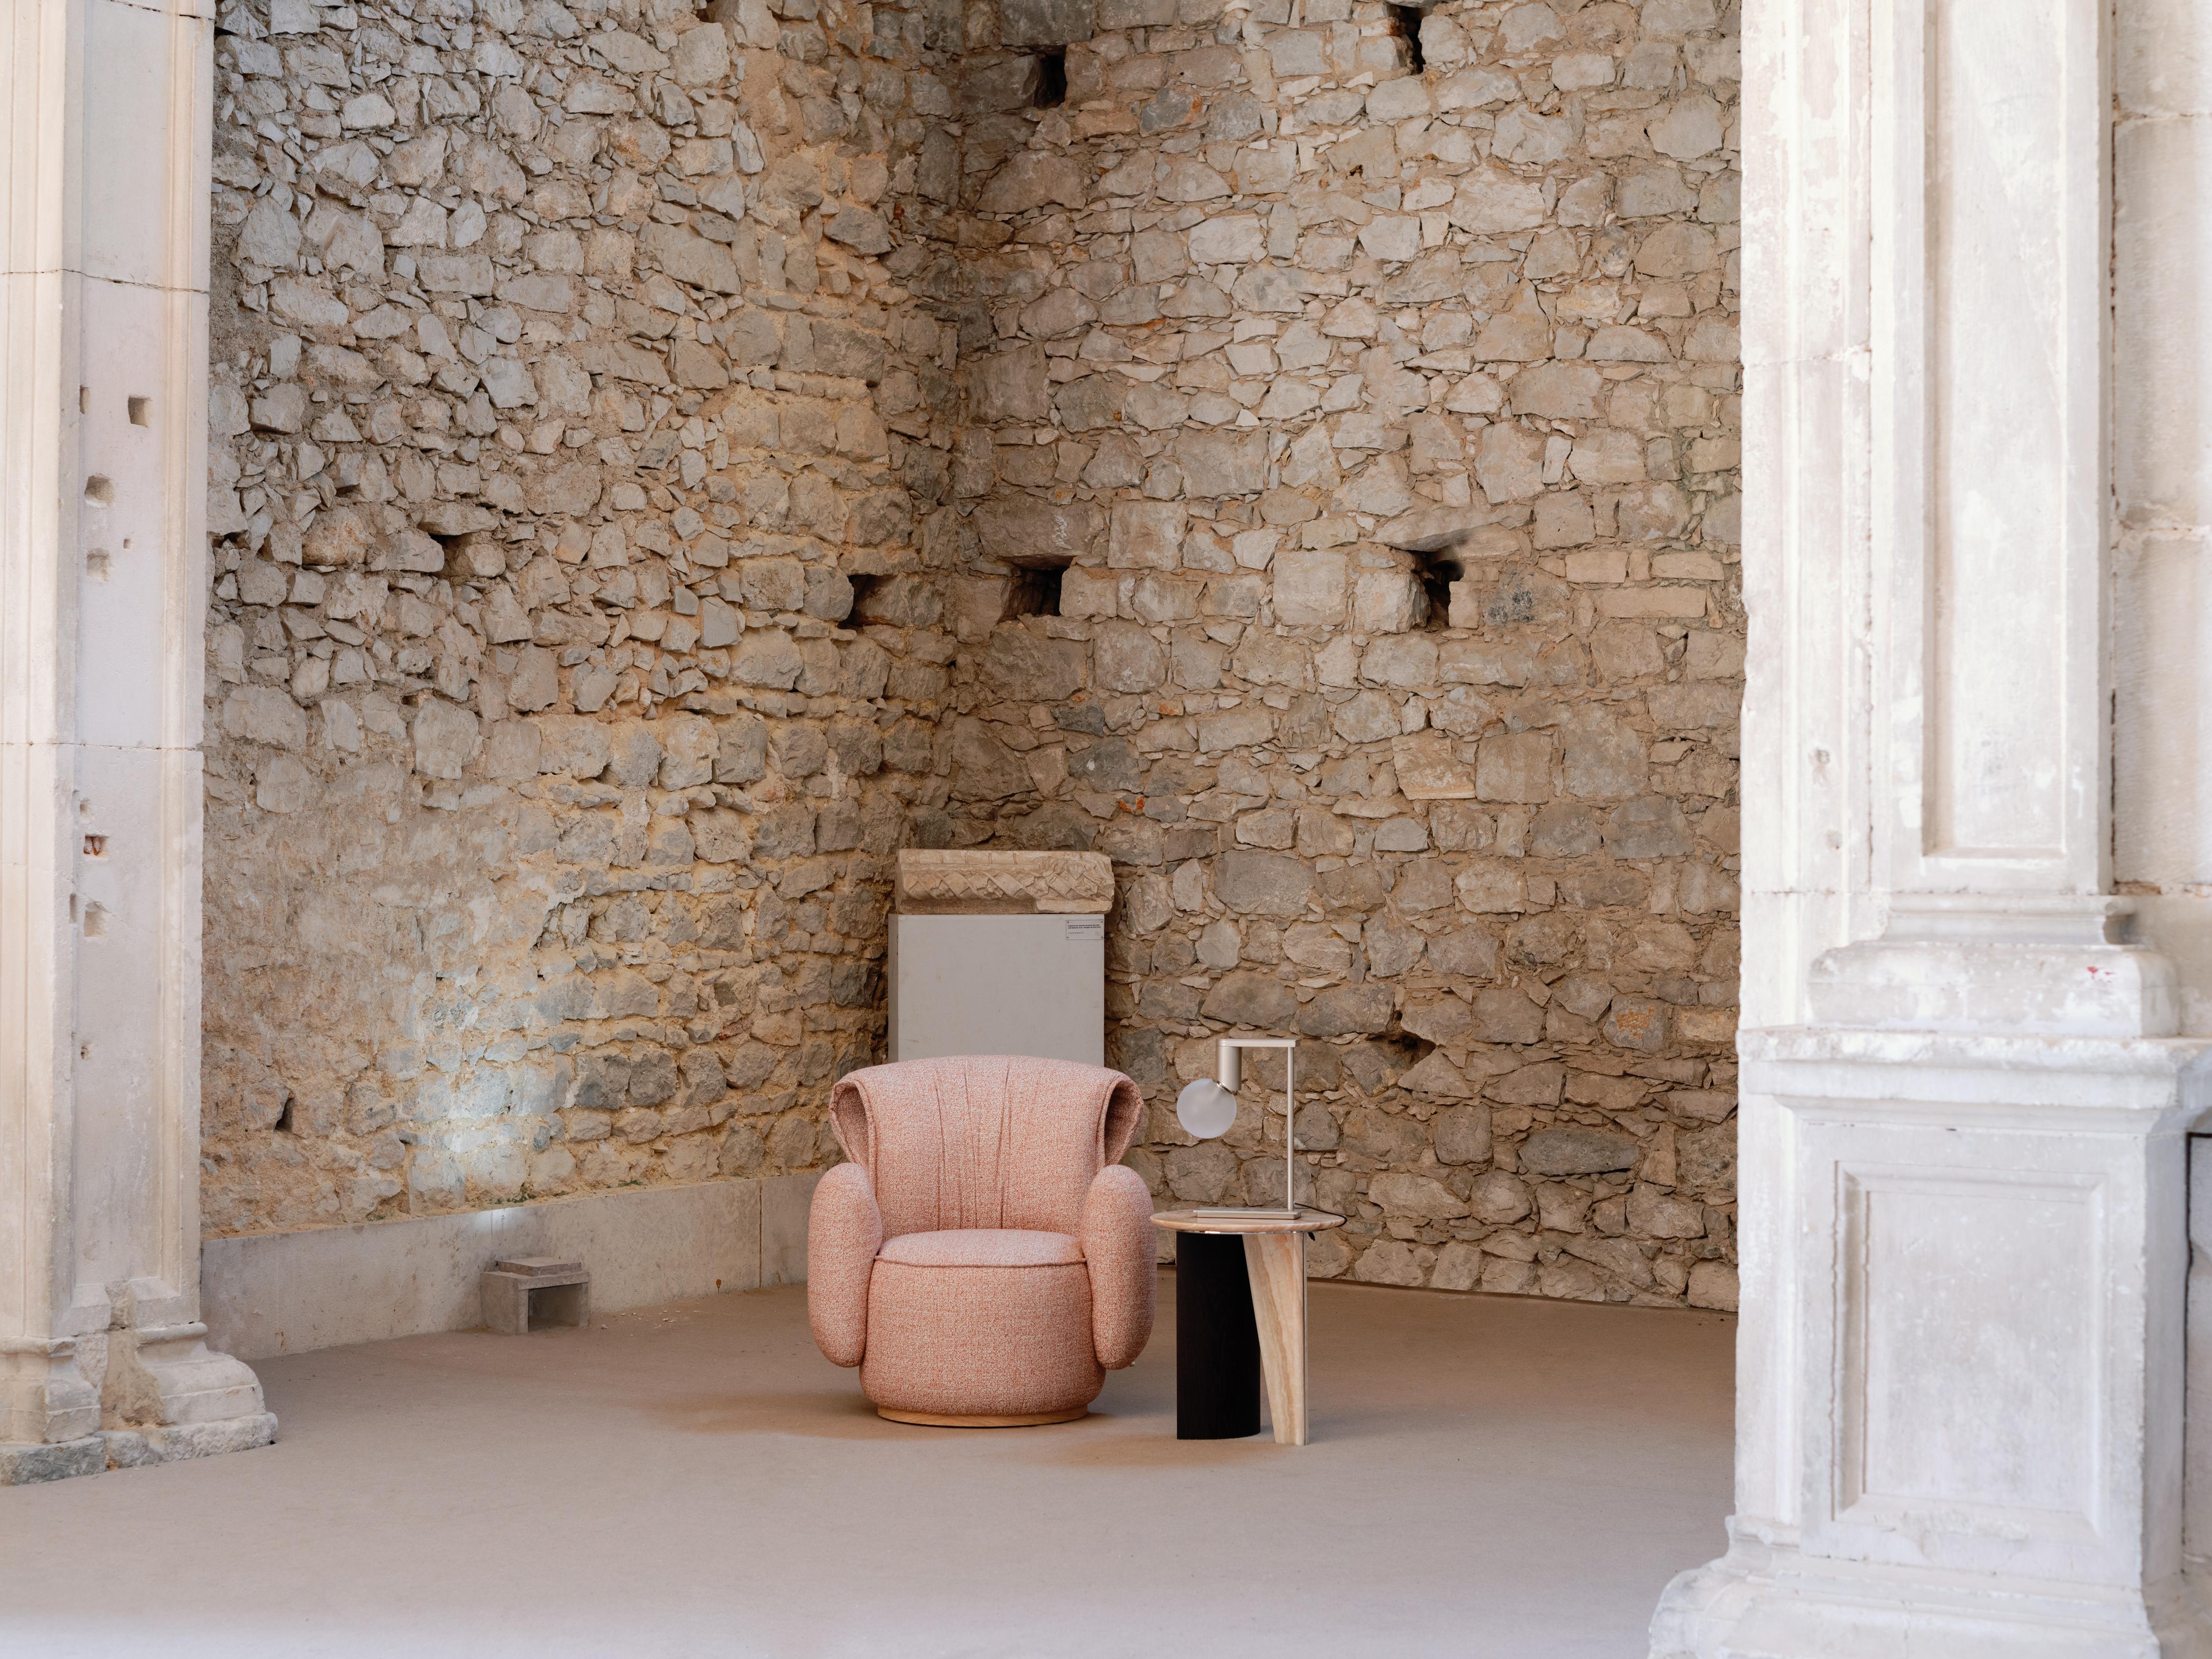 Grass Sessel, Collection'S Contemporary, handgefertigt in Portugal - Europa von Greenapple.

Der Sessel Grass ist dem Tautropfen auf dem Gras in der Natur nachempfunden und verspricht einen gemütlichen Rückzugsort an trüben Tagen. Zeitlose